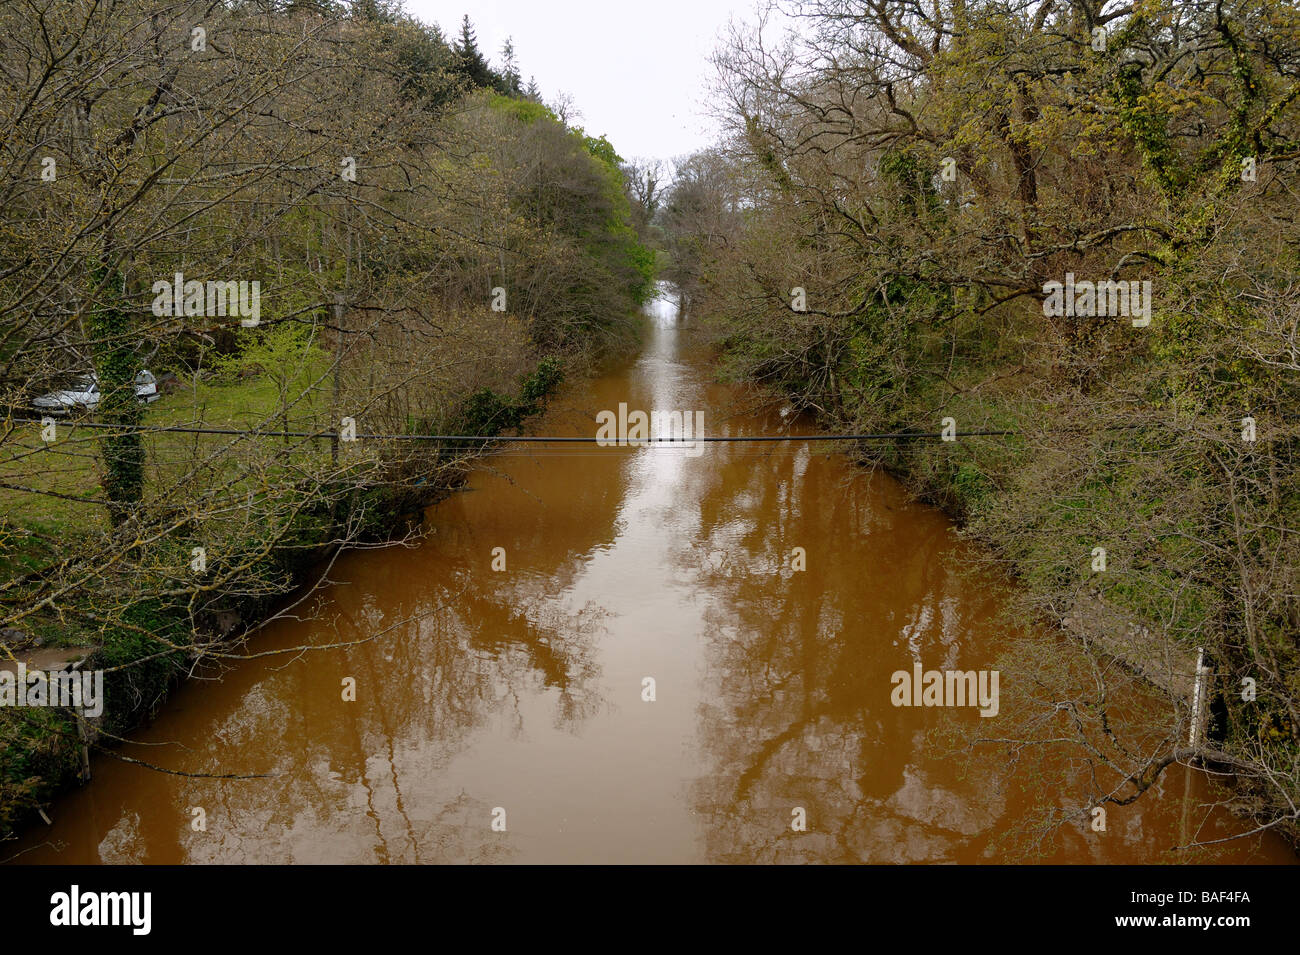 River Teign devient rouge en raison de la pollution provenant d'une carrière voisine South Devon, Angleterre Banque D'Images